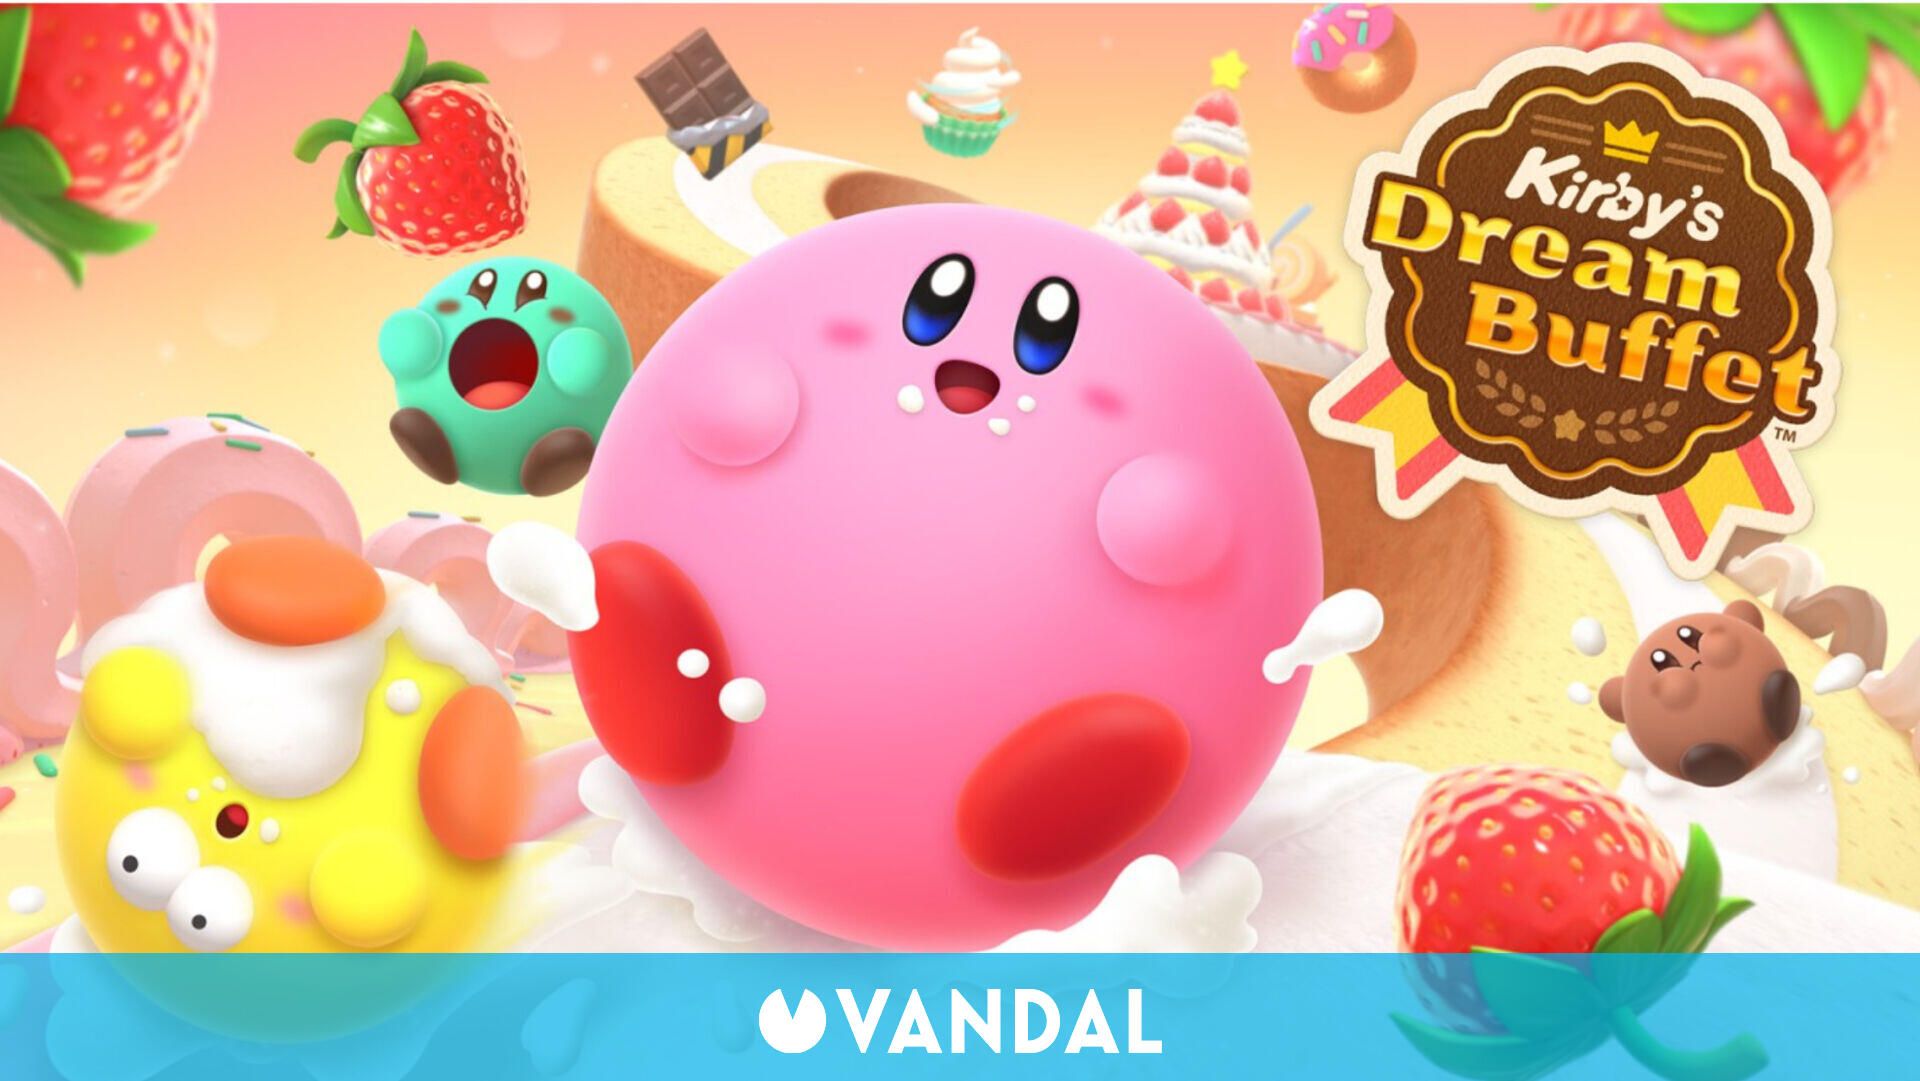 Nintendo anuncia Kirby's Dream Buffet: Carreras arcade multijugador este  verano en Switch - Vandal